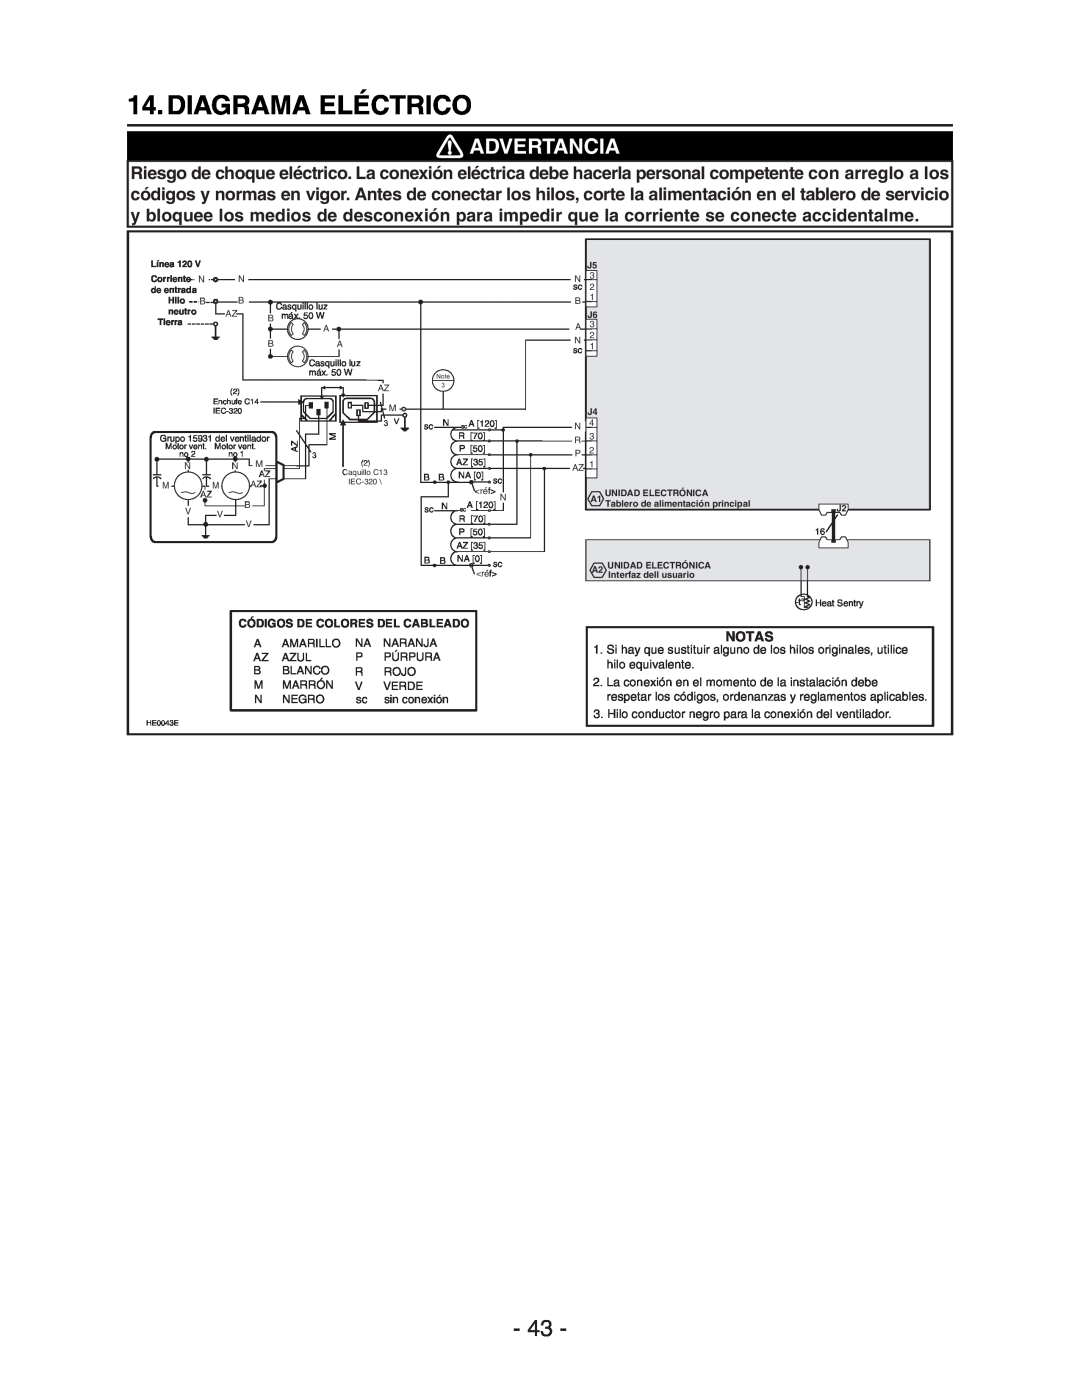 Broan Model E662 installation instructions Diagrama Eléctrico, Advertancia, Notas 